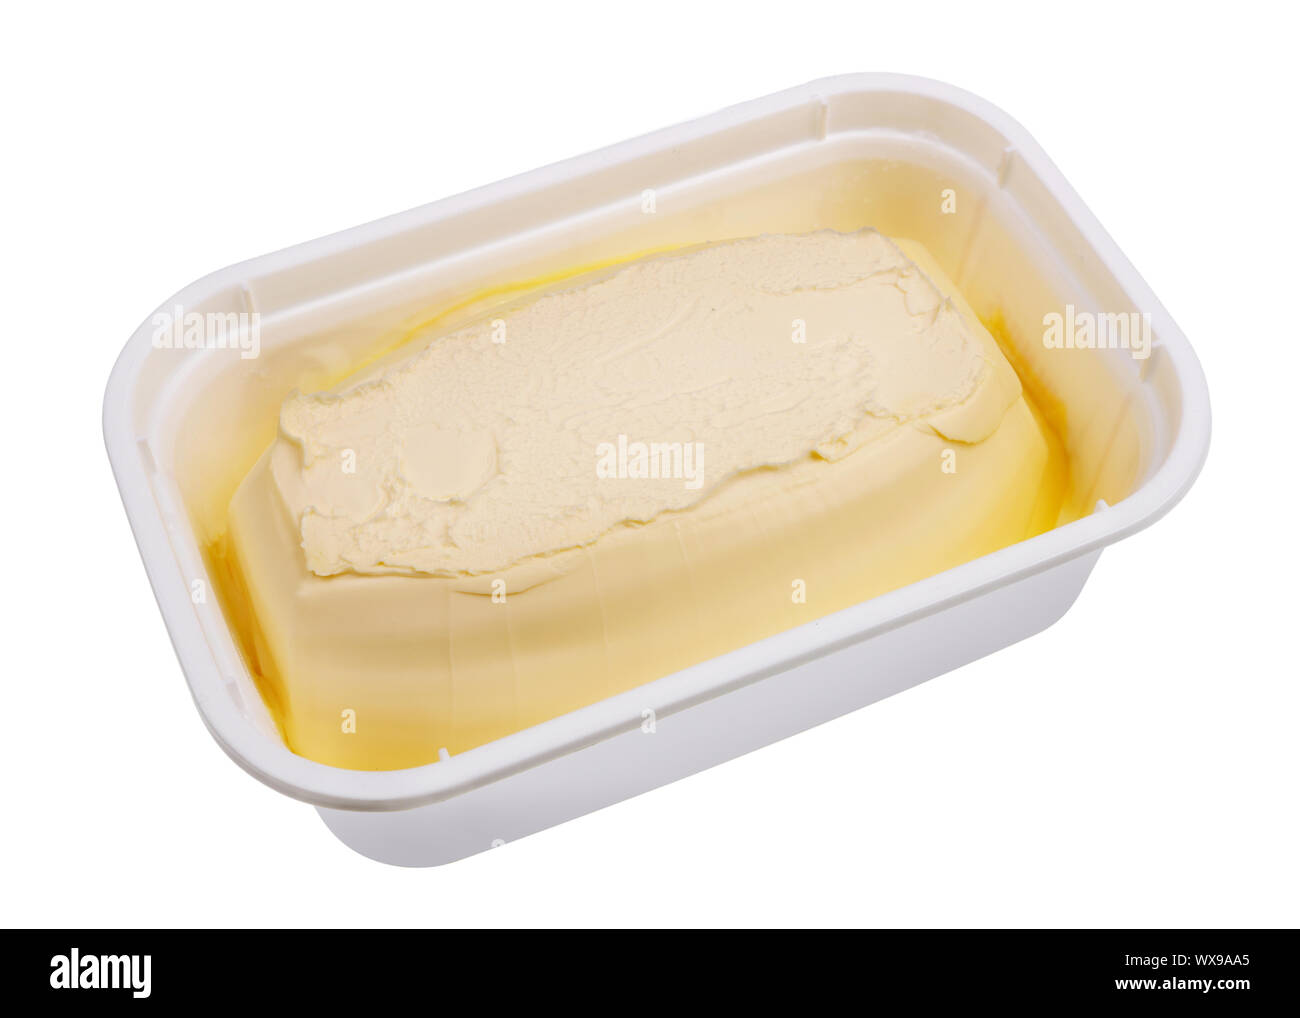 La margarine crémeuse dans un contenant de plastique industriel isolé Banque D'Images